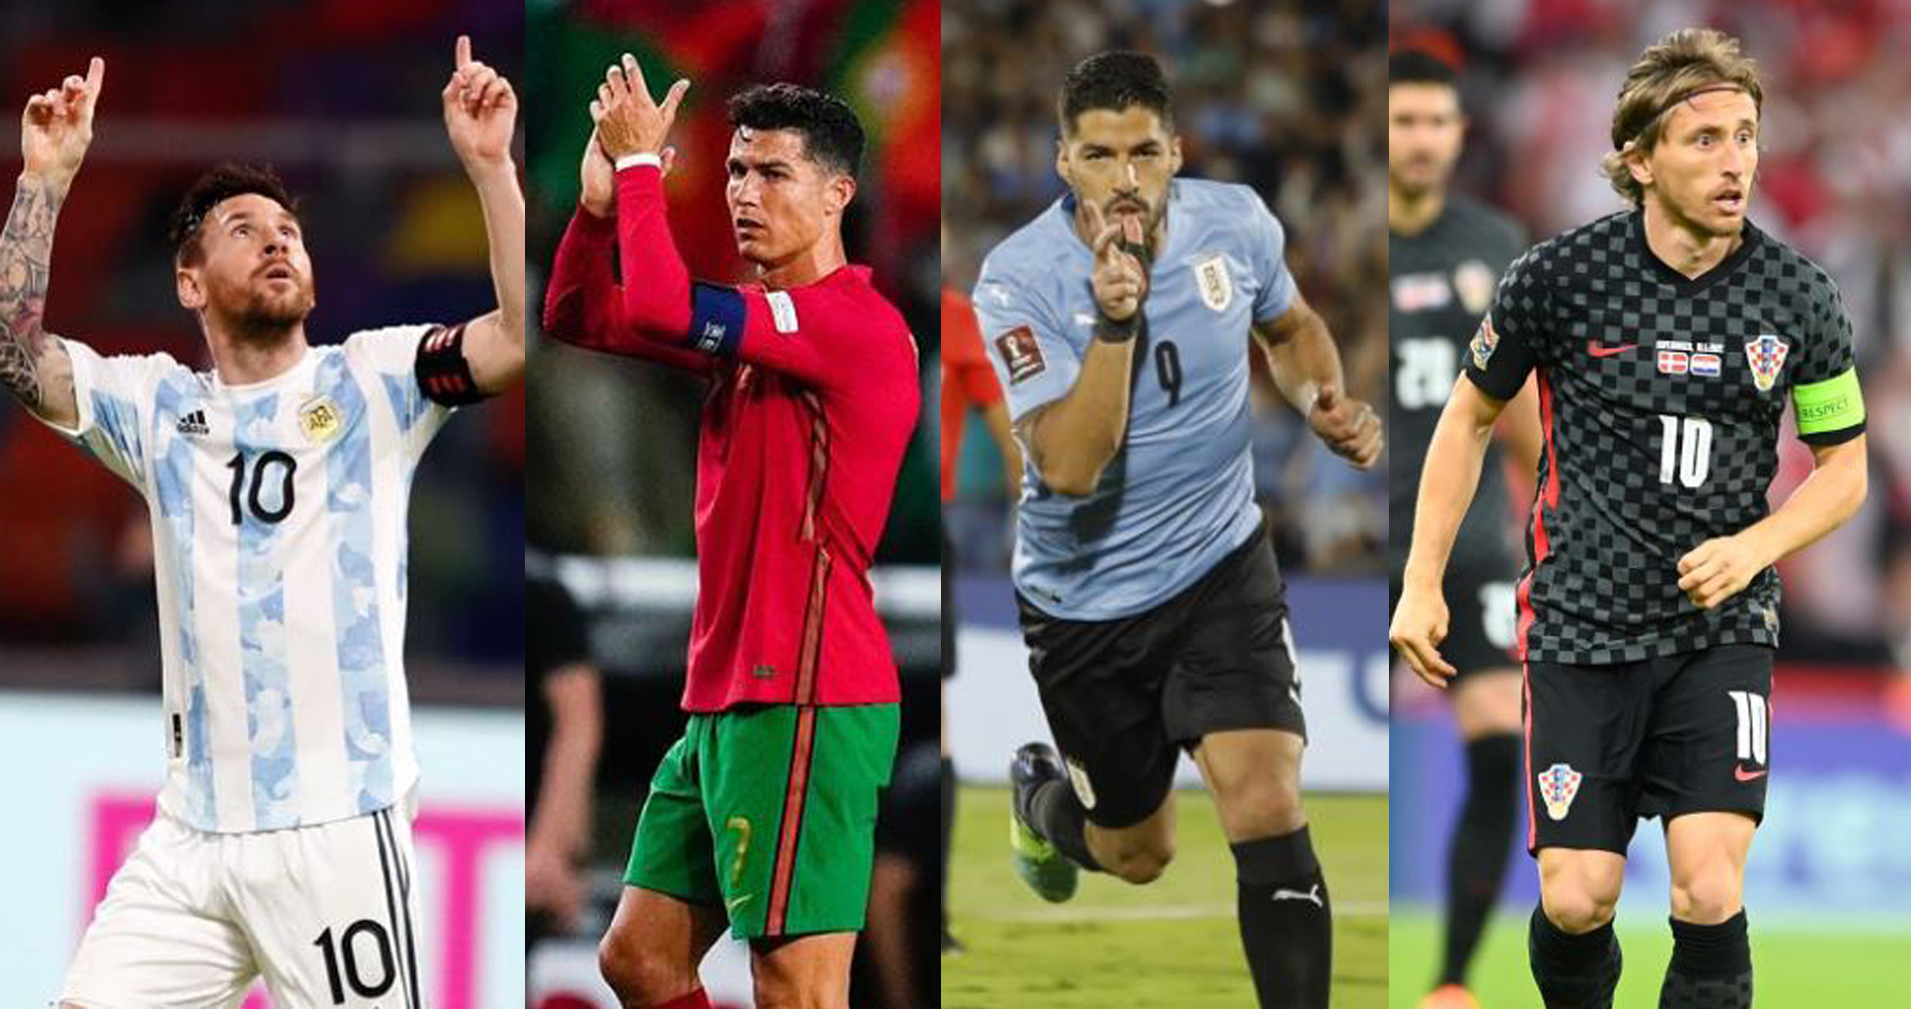 Este podría ser el últimoi Mundial de las grandes estrellas del futbol de la reciente década. (Foto Prensa Libre: Instagram)